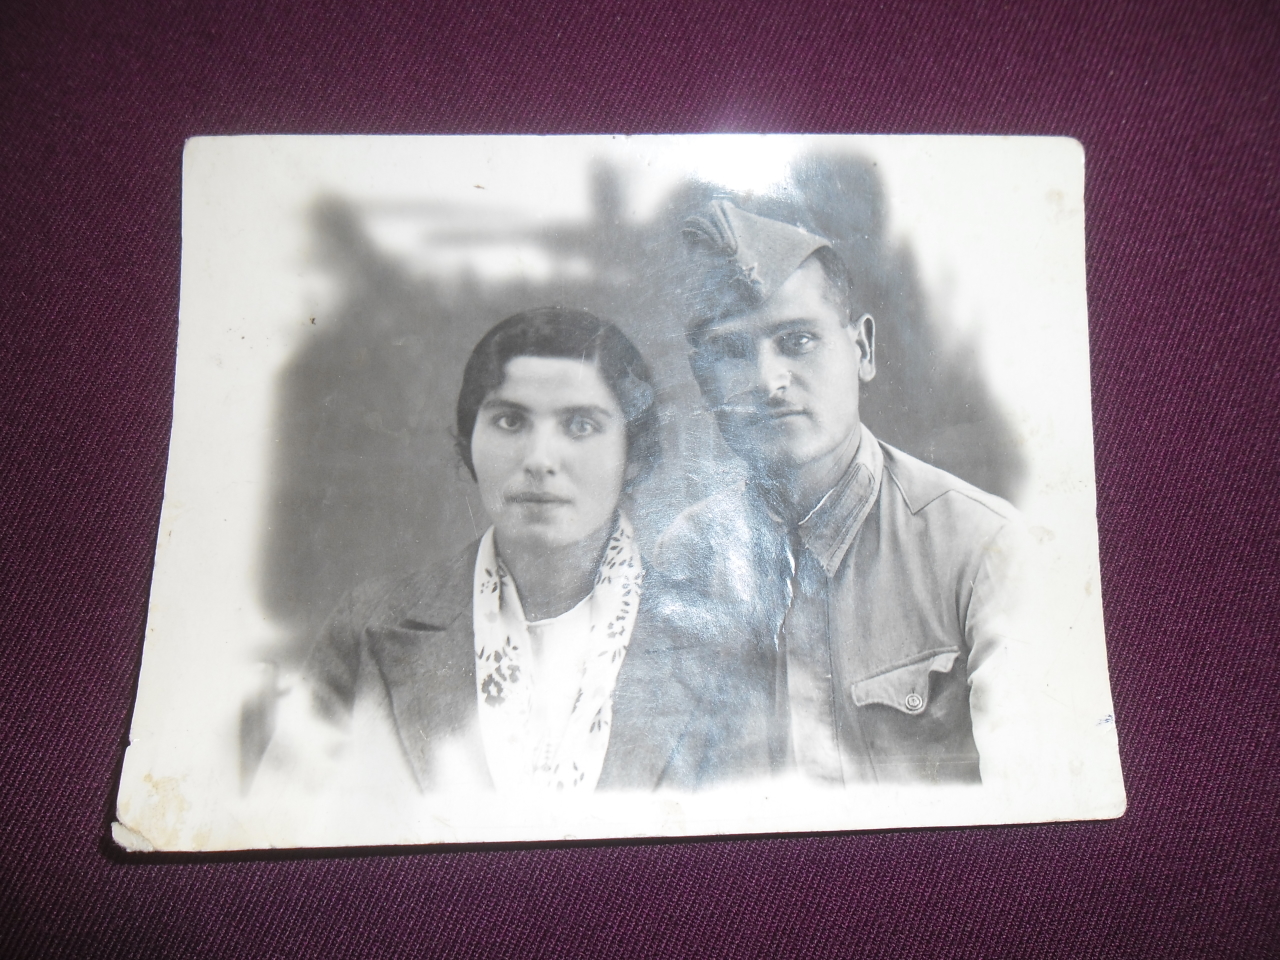 Բաբկեն Գեղամի Սիրունյանը (Վաստակավոր ուսուցիչ, Հայրենական պատերազմի մասնակից)  կնոջ հետ